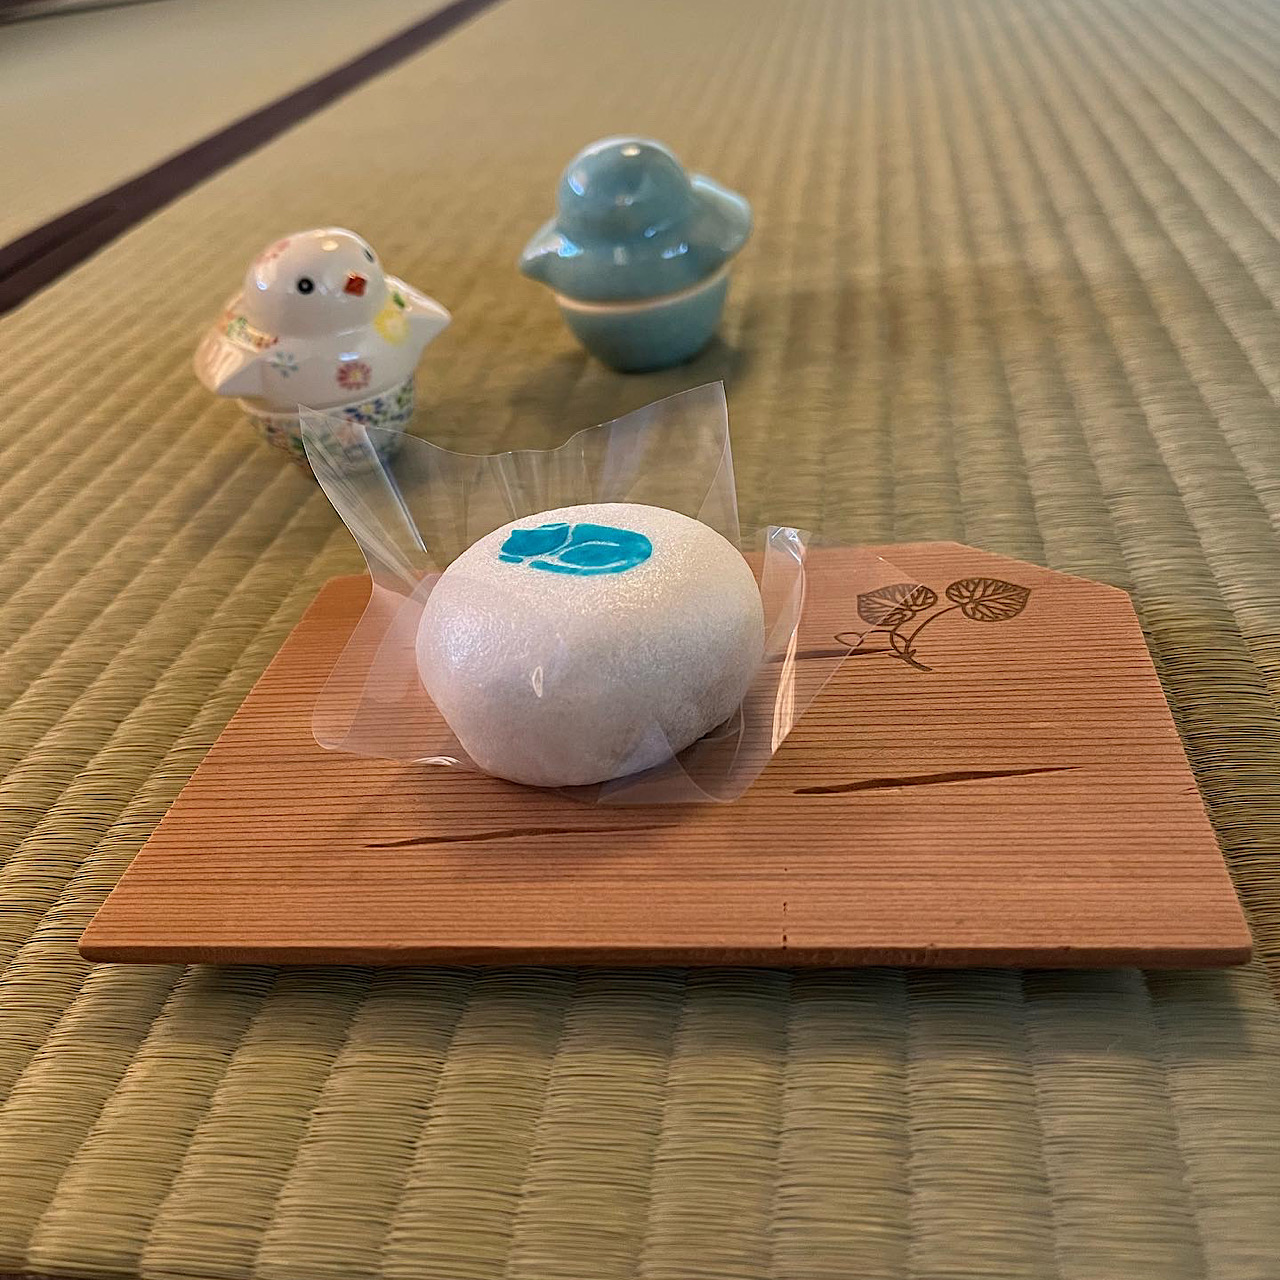 京都御所「拾翠亭」春眠茶会、主菓子に老松さんの上用饅頭(青い眠り猫)とすずめの理由